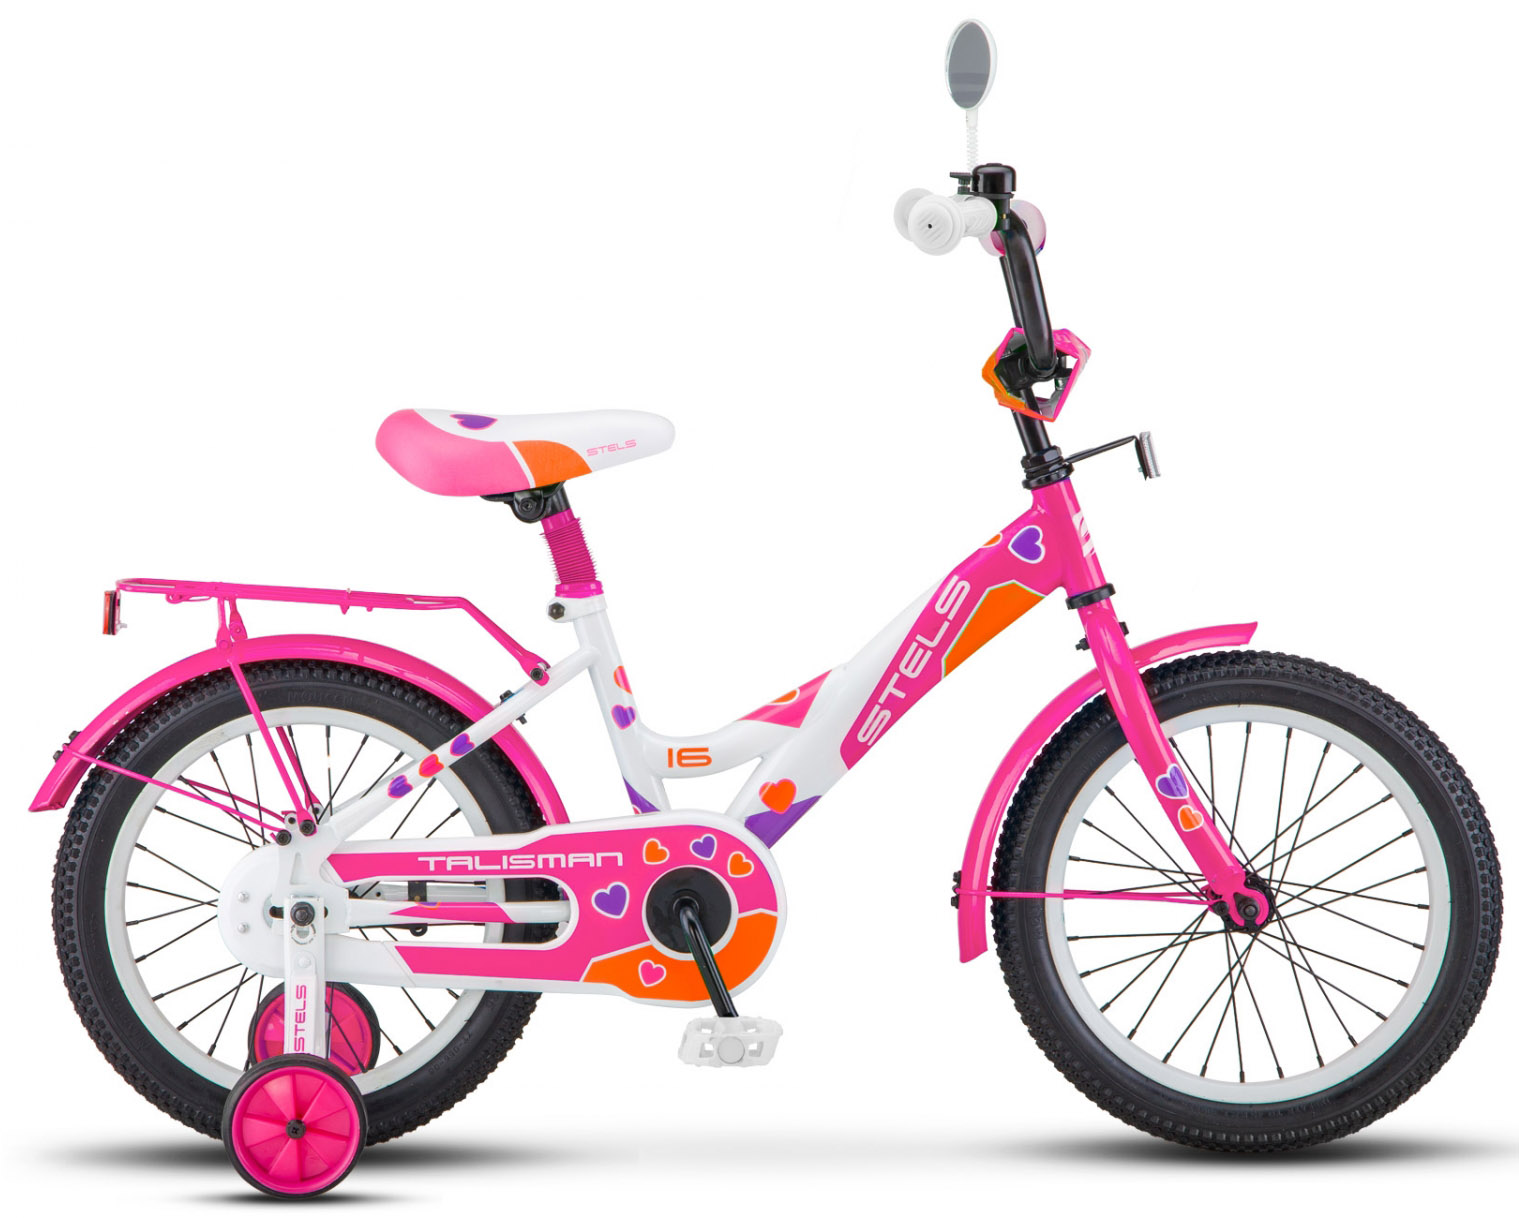  Отзывы о Трехколесный детский велосипед Stels Talisman 16 (Z010) 2018